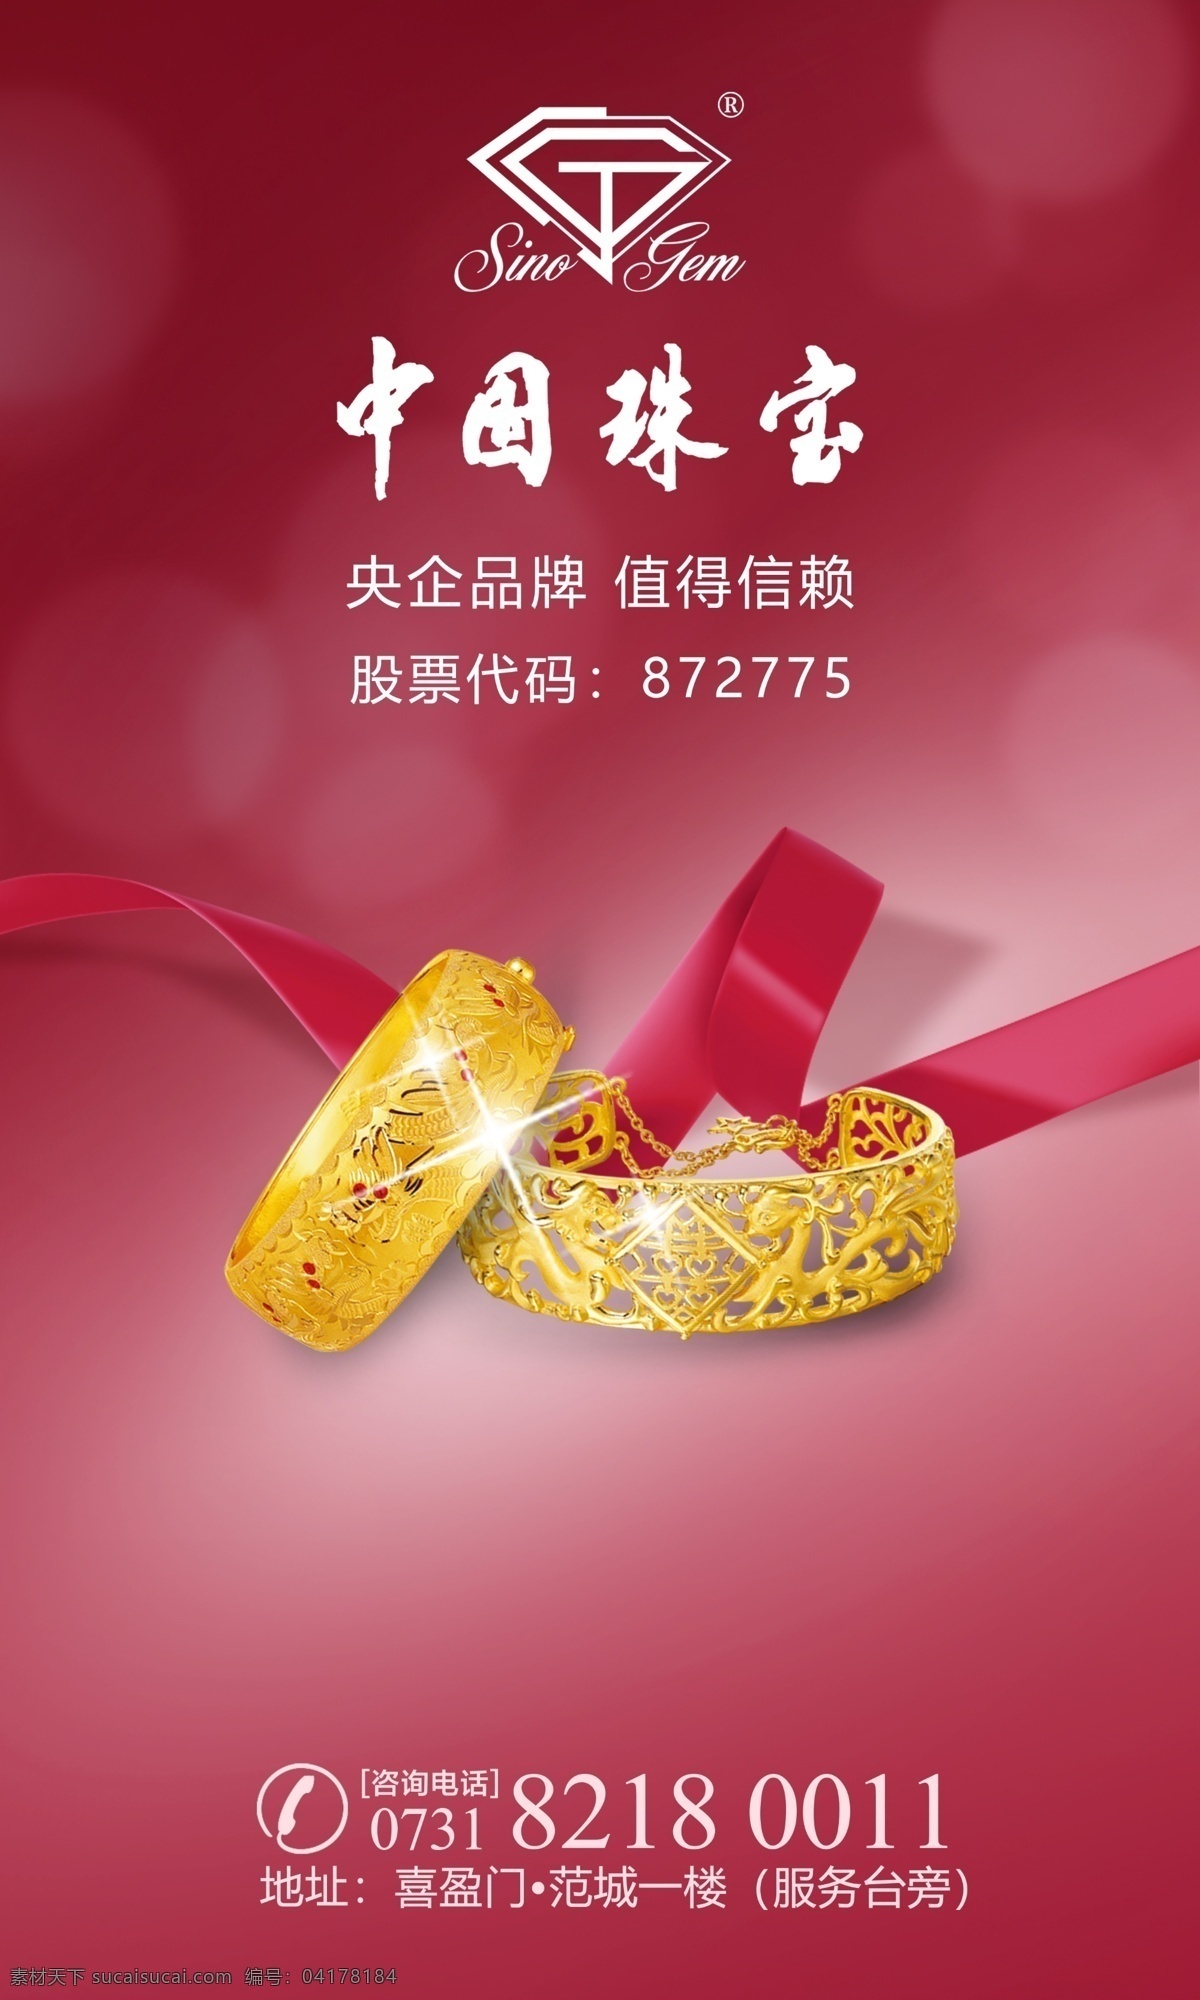 中国 珠宝 形象 图 中国珠宝 黄金手镯 简单 红色背景 丝缎